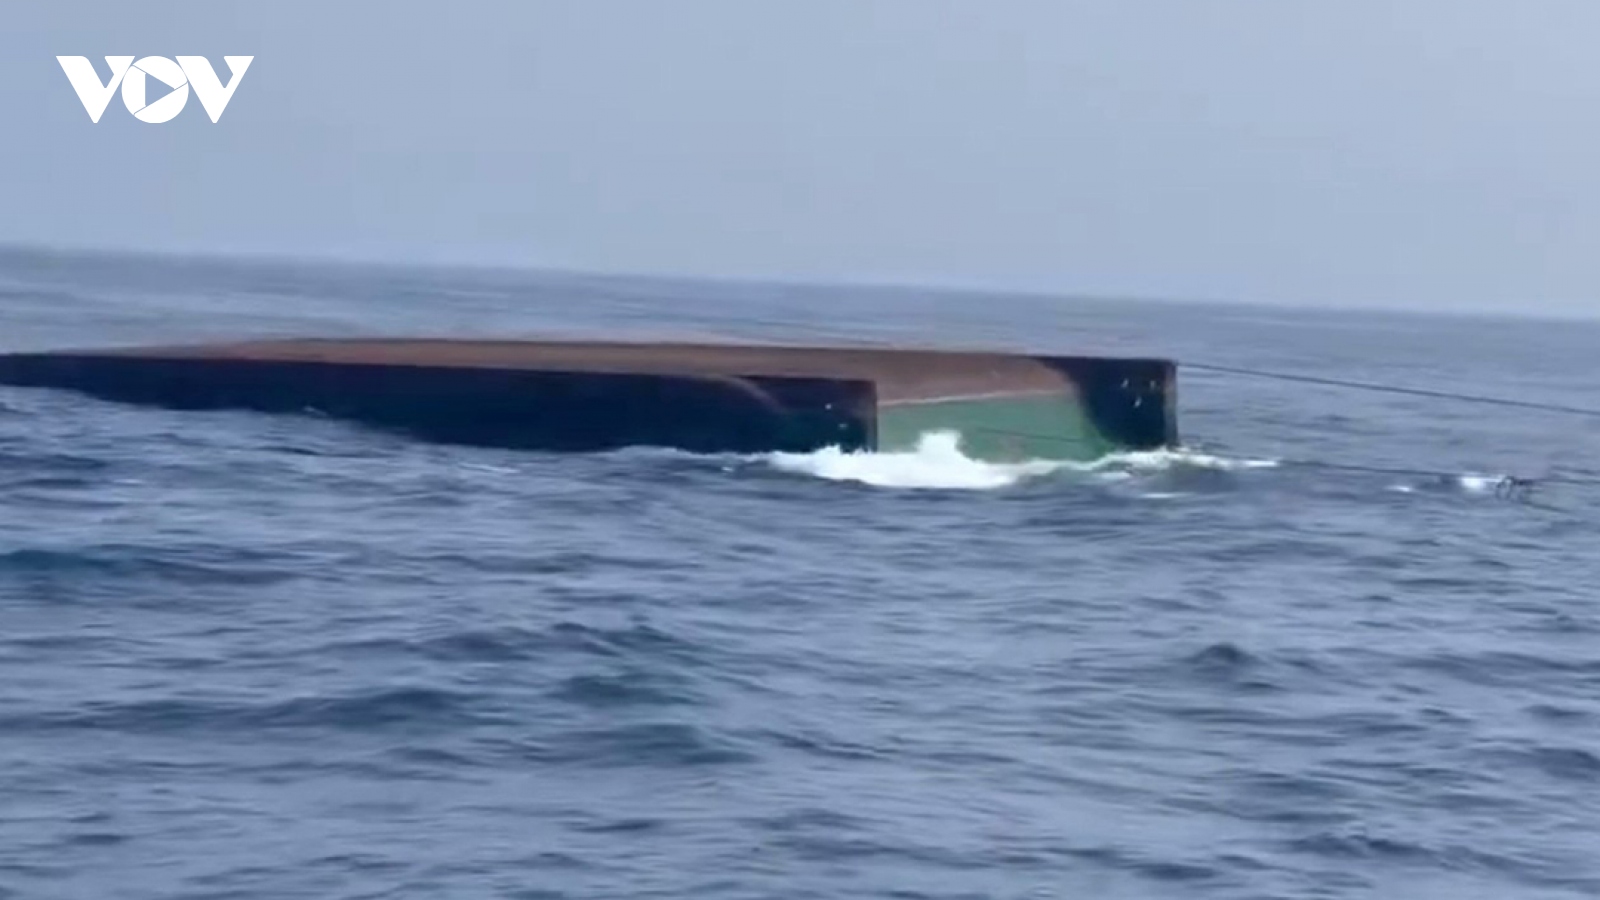 Chìm tàu gần đảo Lý Sơn, 3 người chết, 2 người mất tích